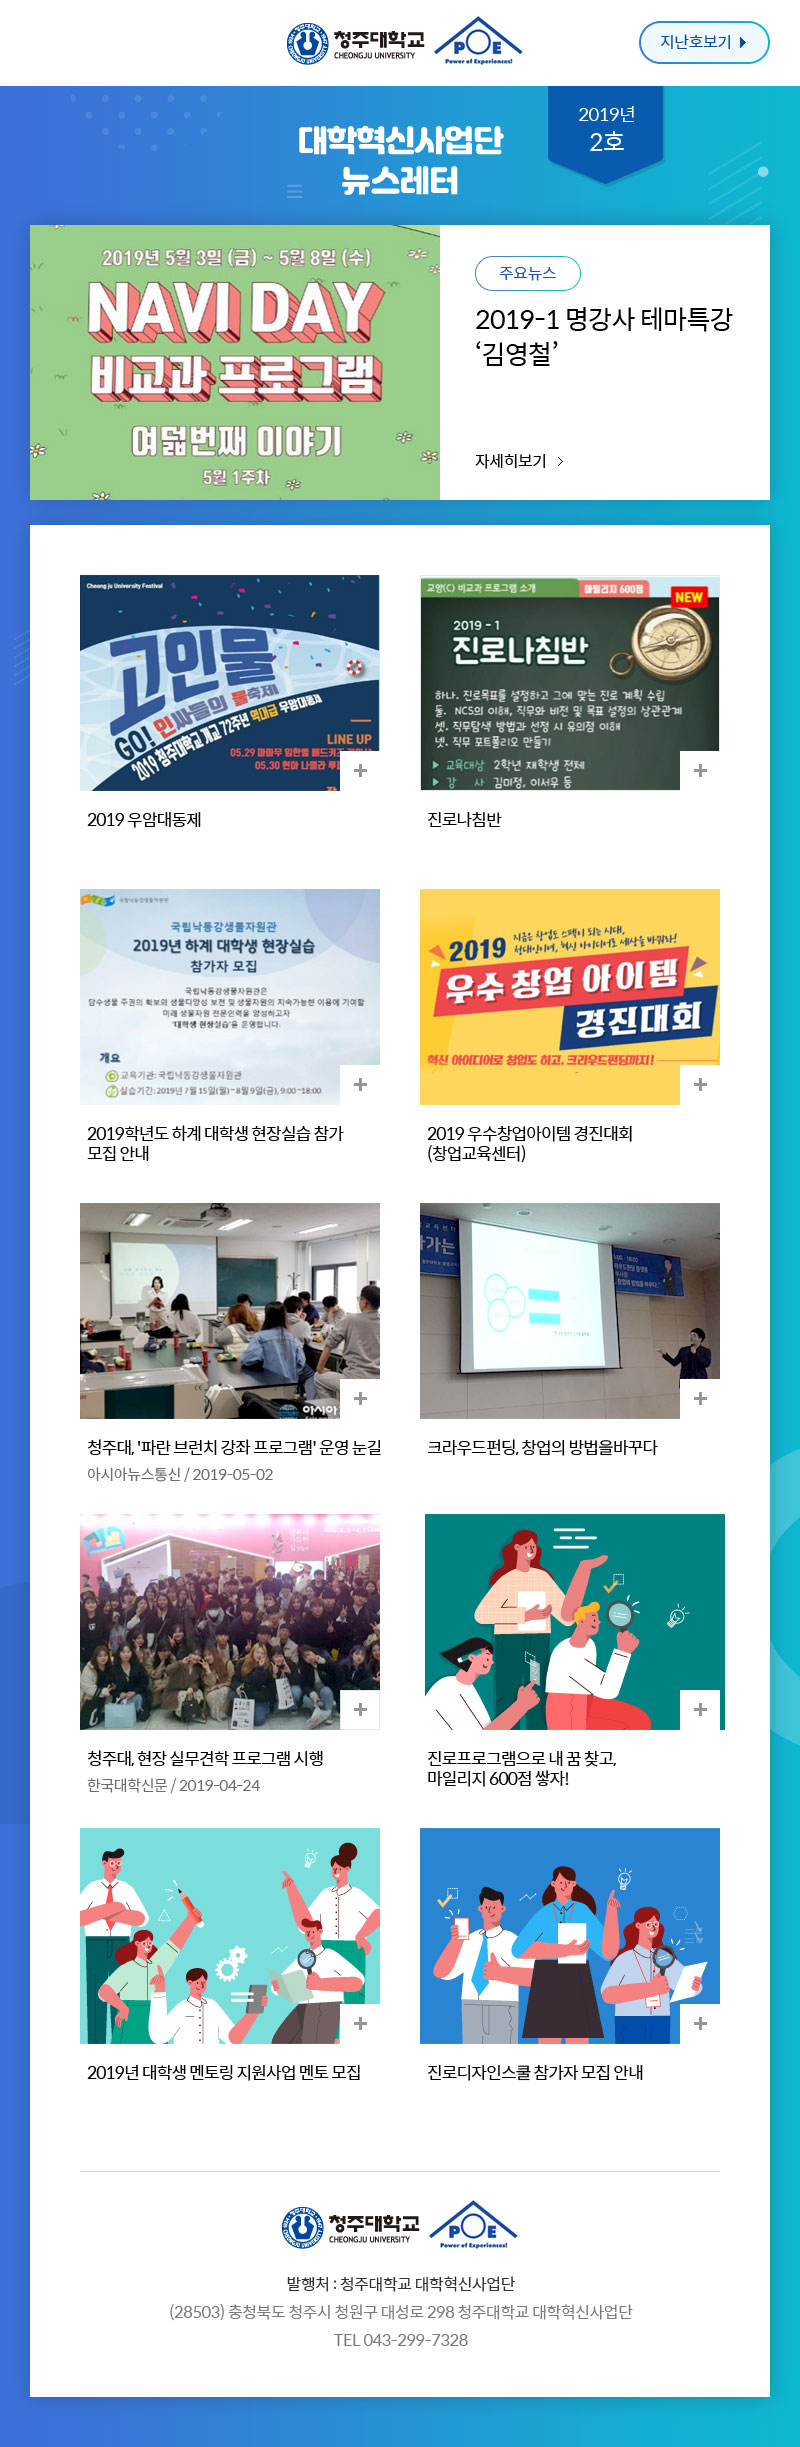 대학혁신사업단 뉴스레터 2019년 2호 뉴스레터